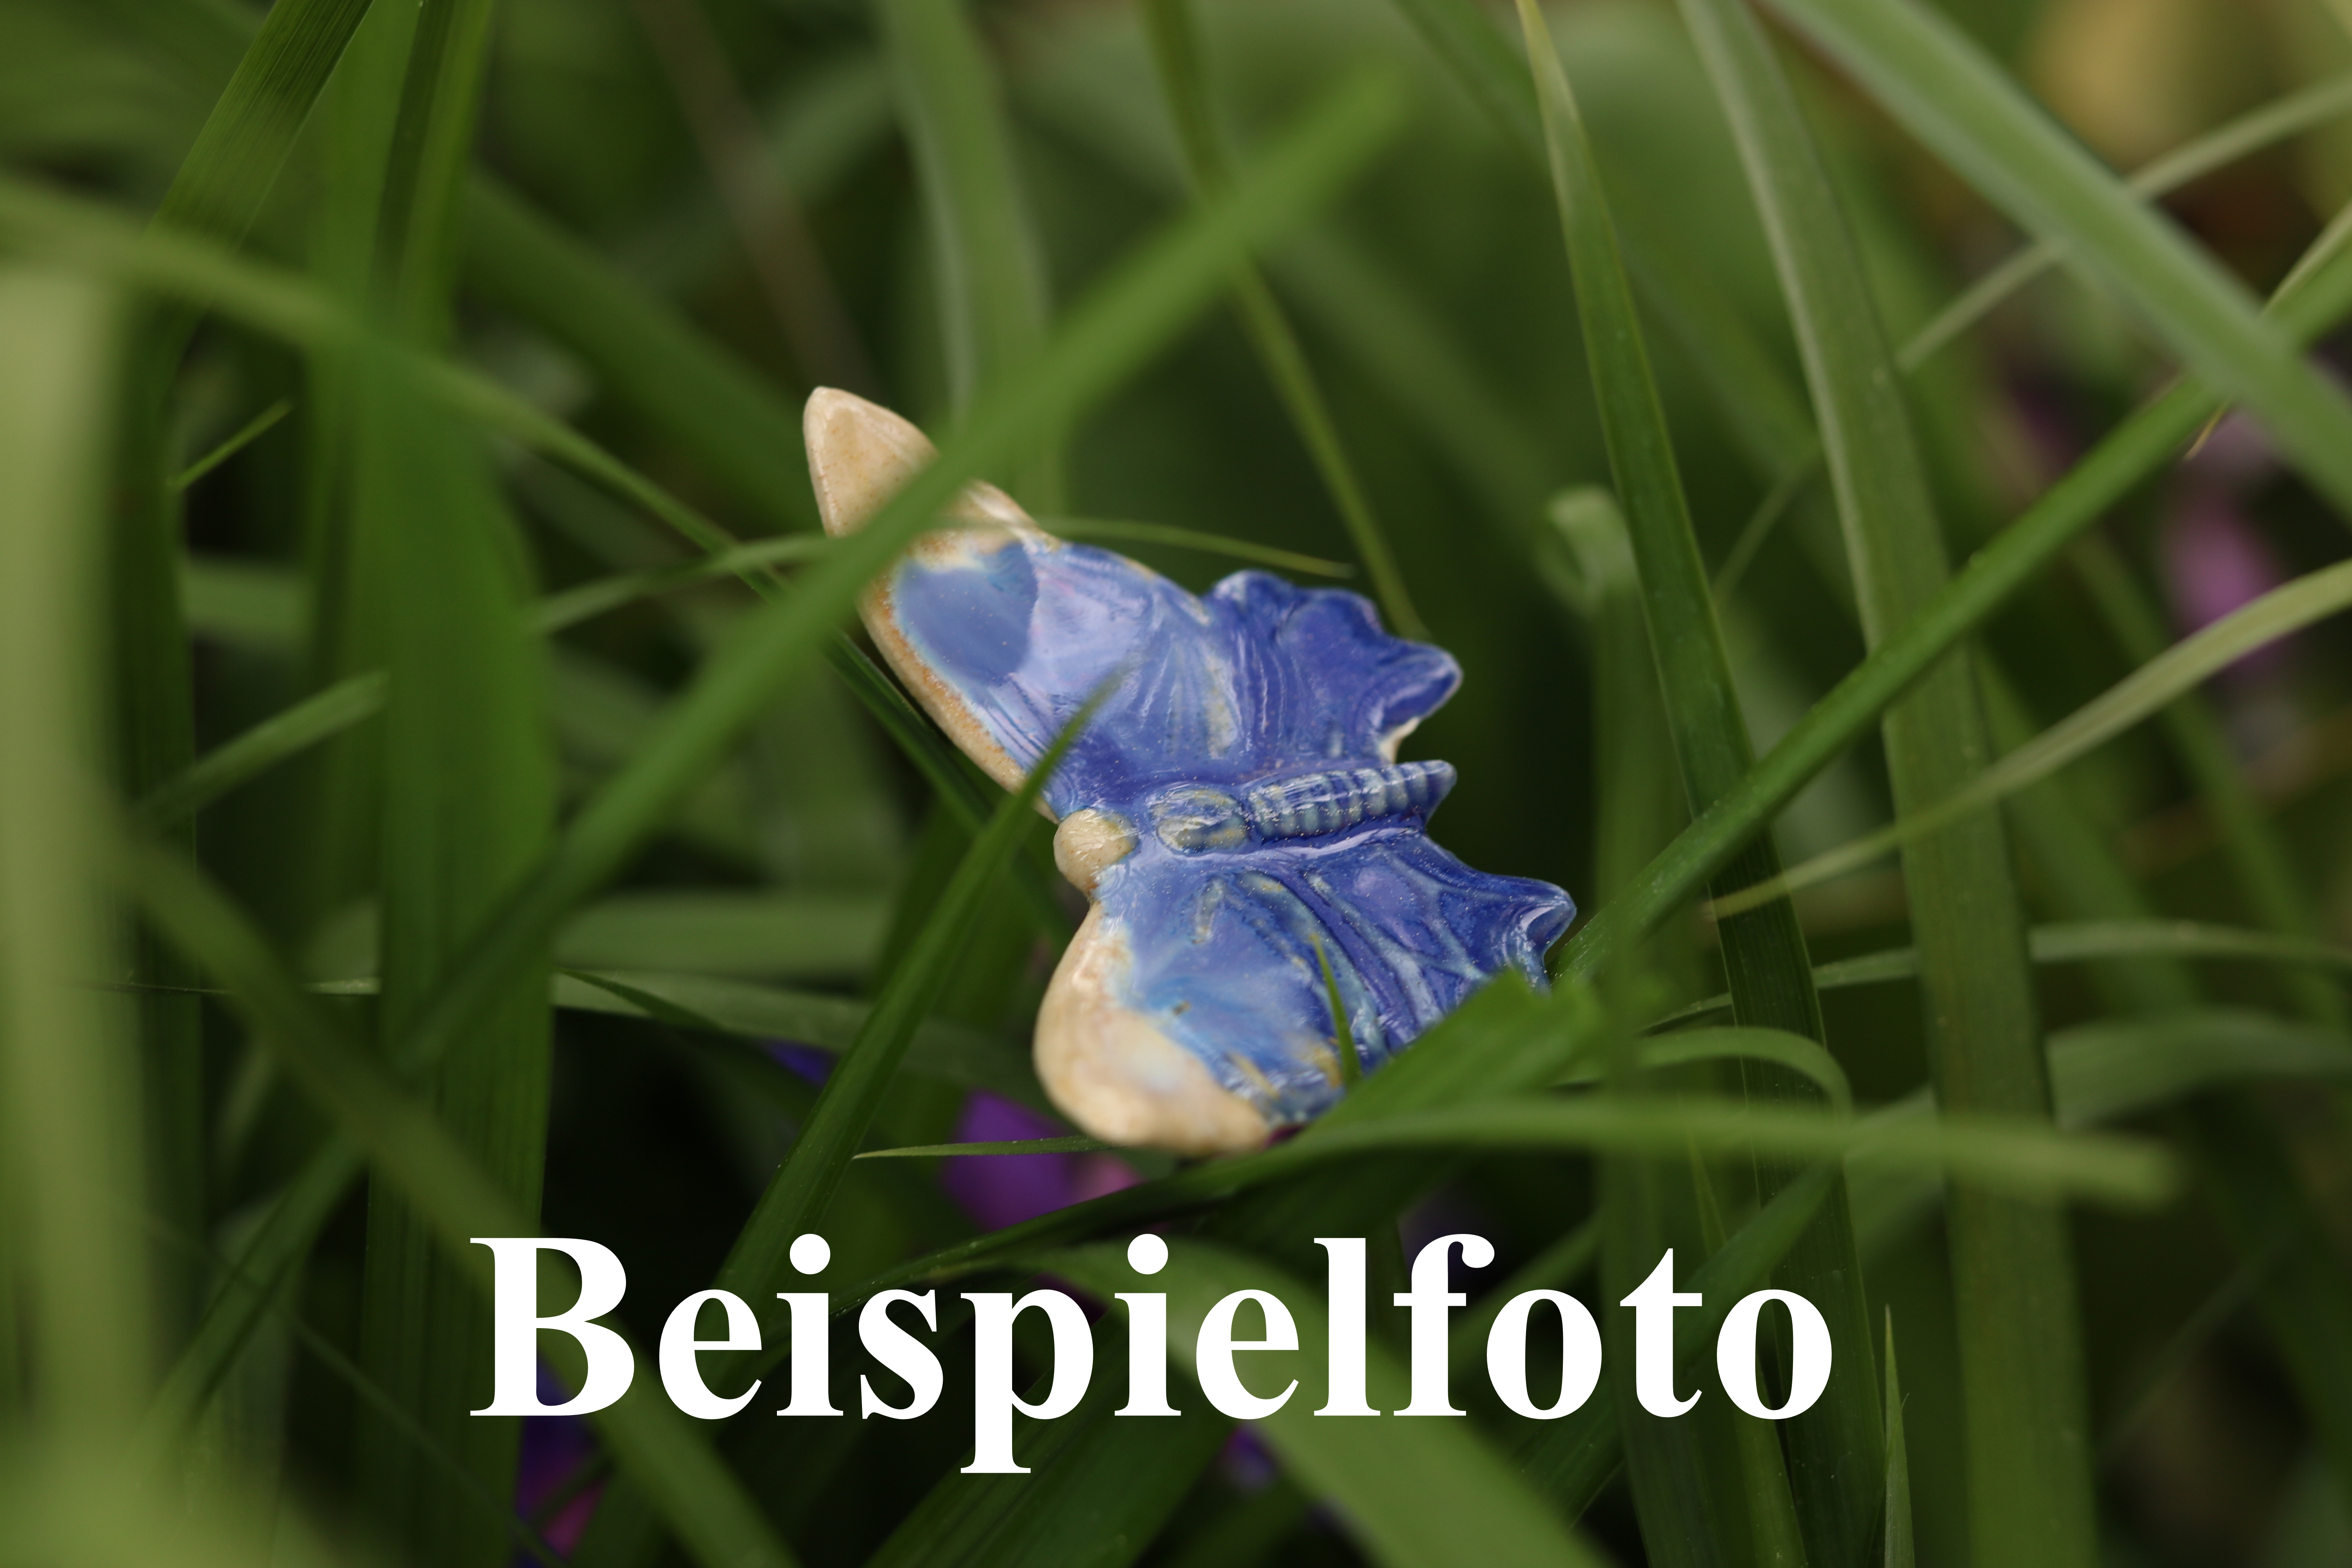 Steck- Schmetterling Lila-Blau / 5 cm